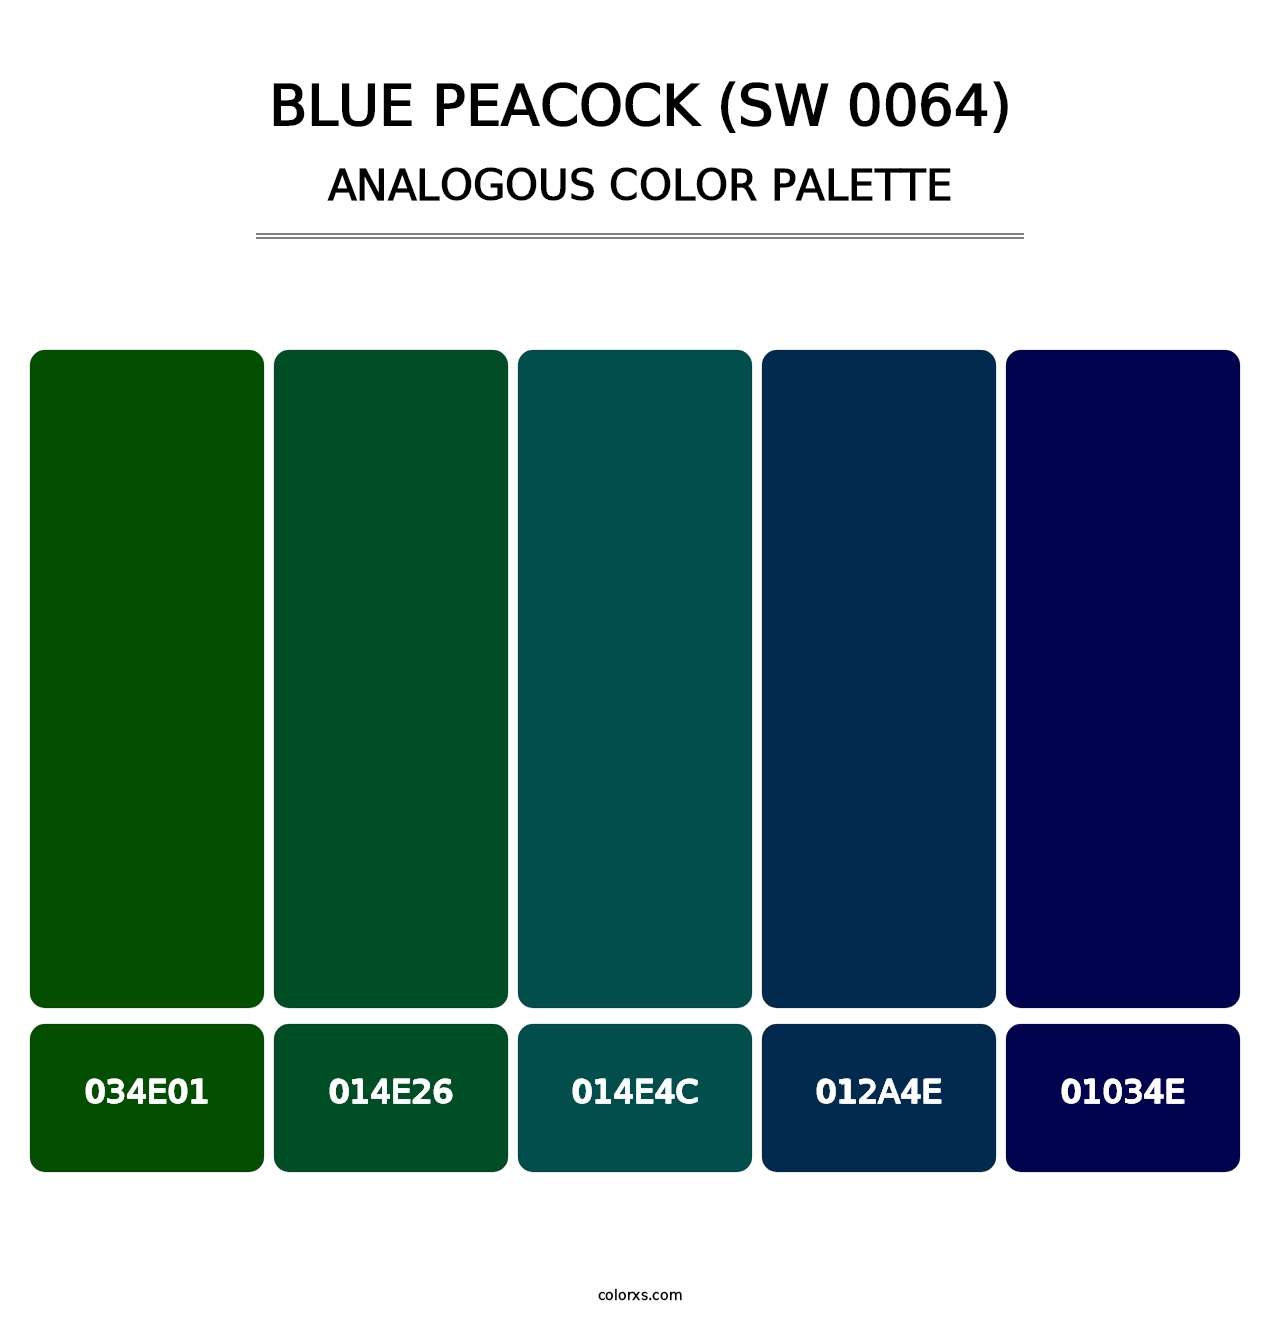 Blue Peacock (SW 0064) - Analogous Color Palette